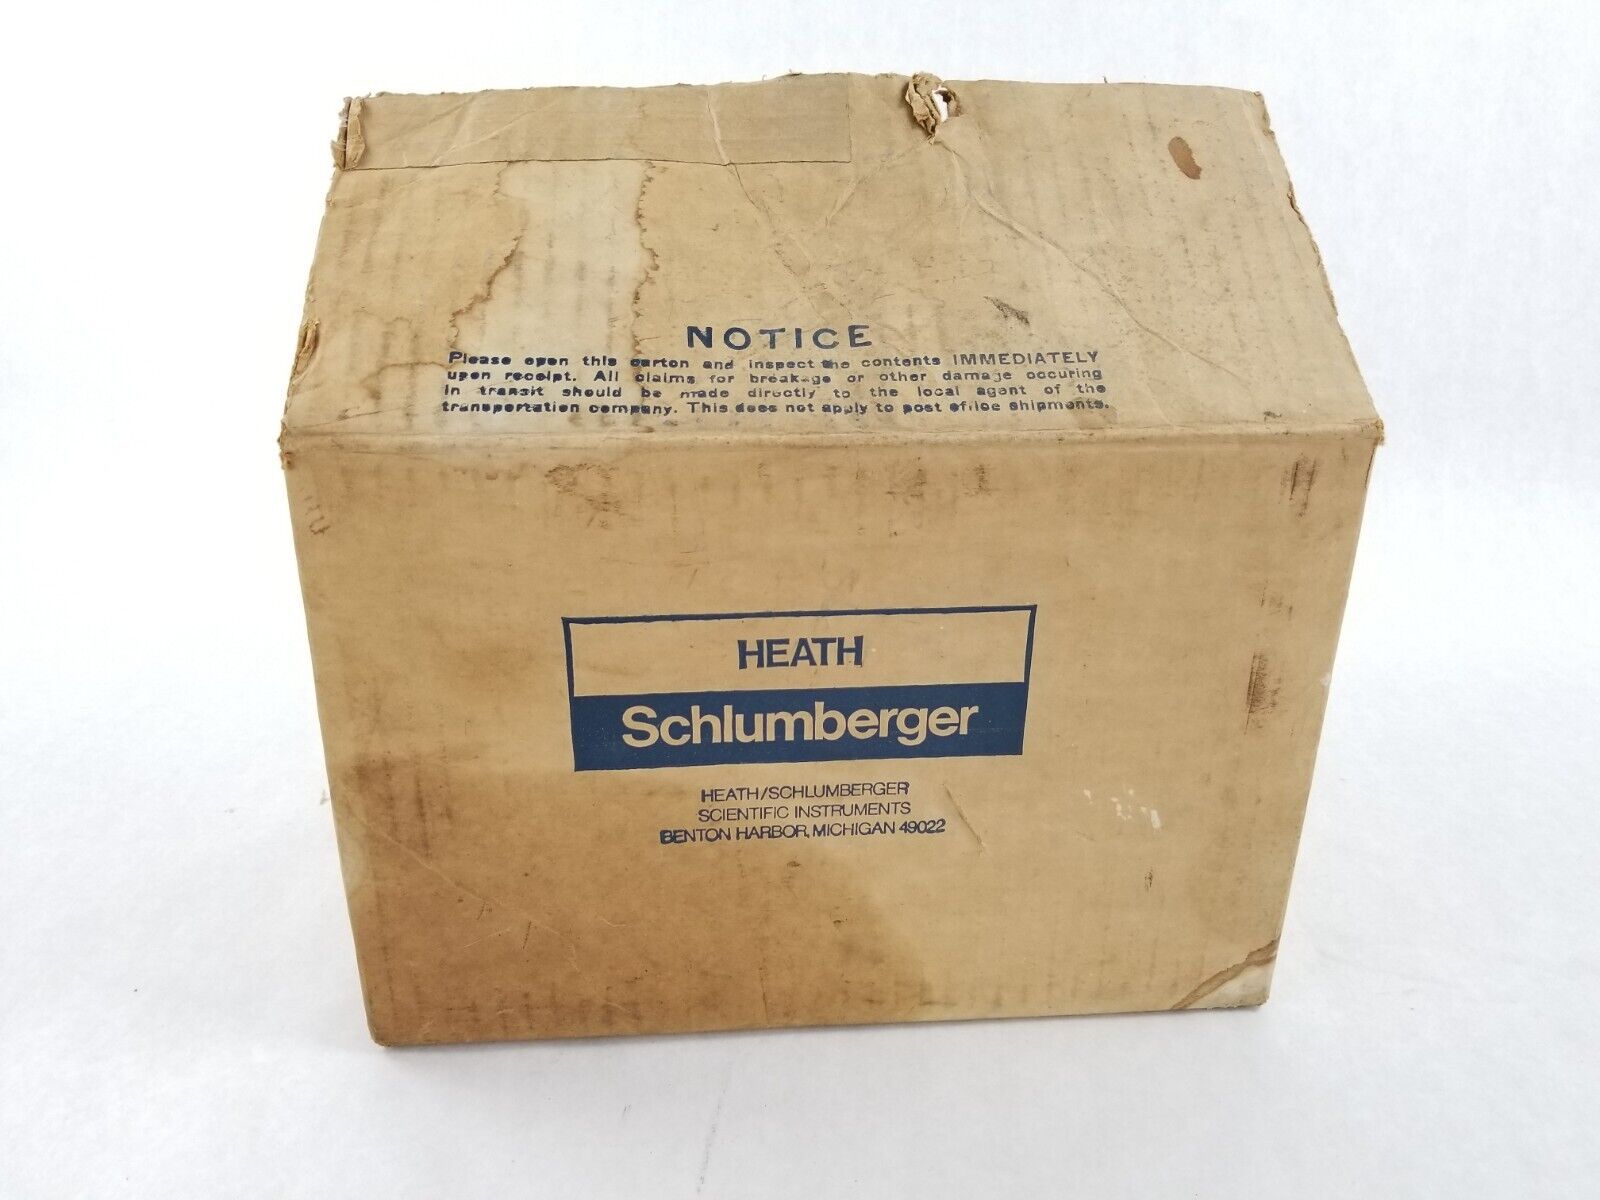 Heath Schlumberger Engine Analyzer Model WM-5100